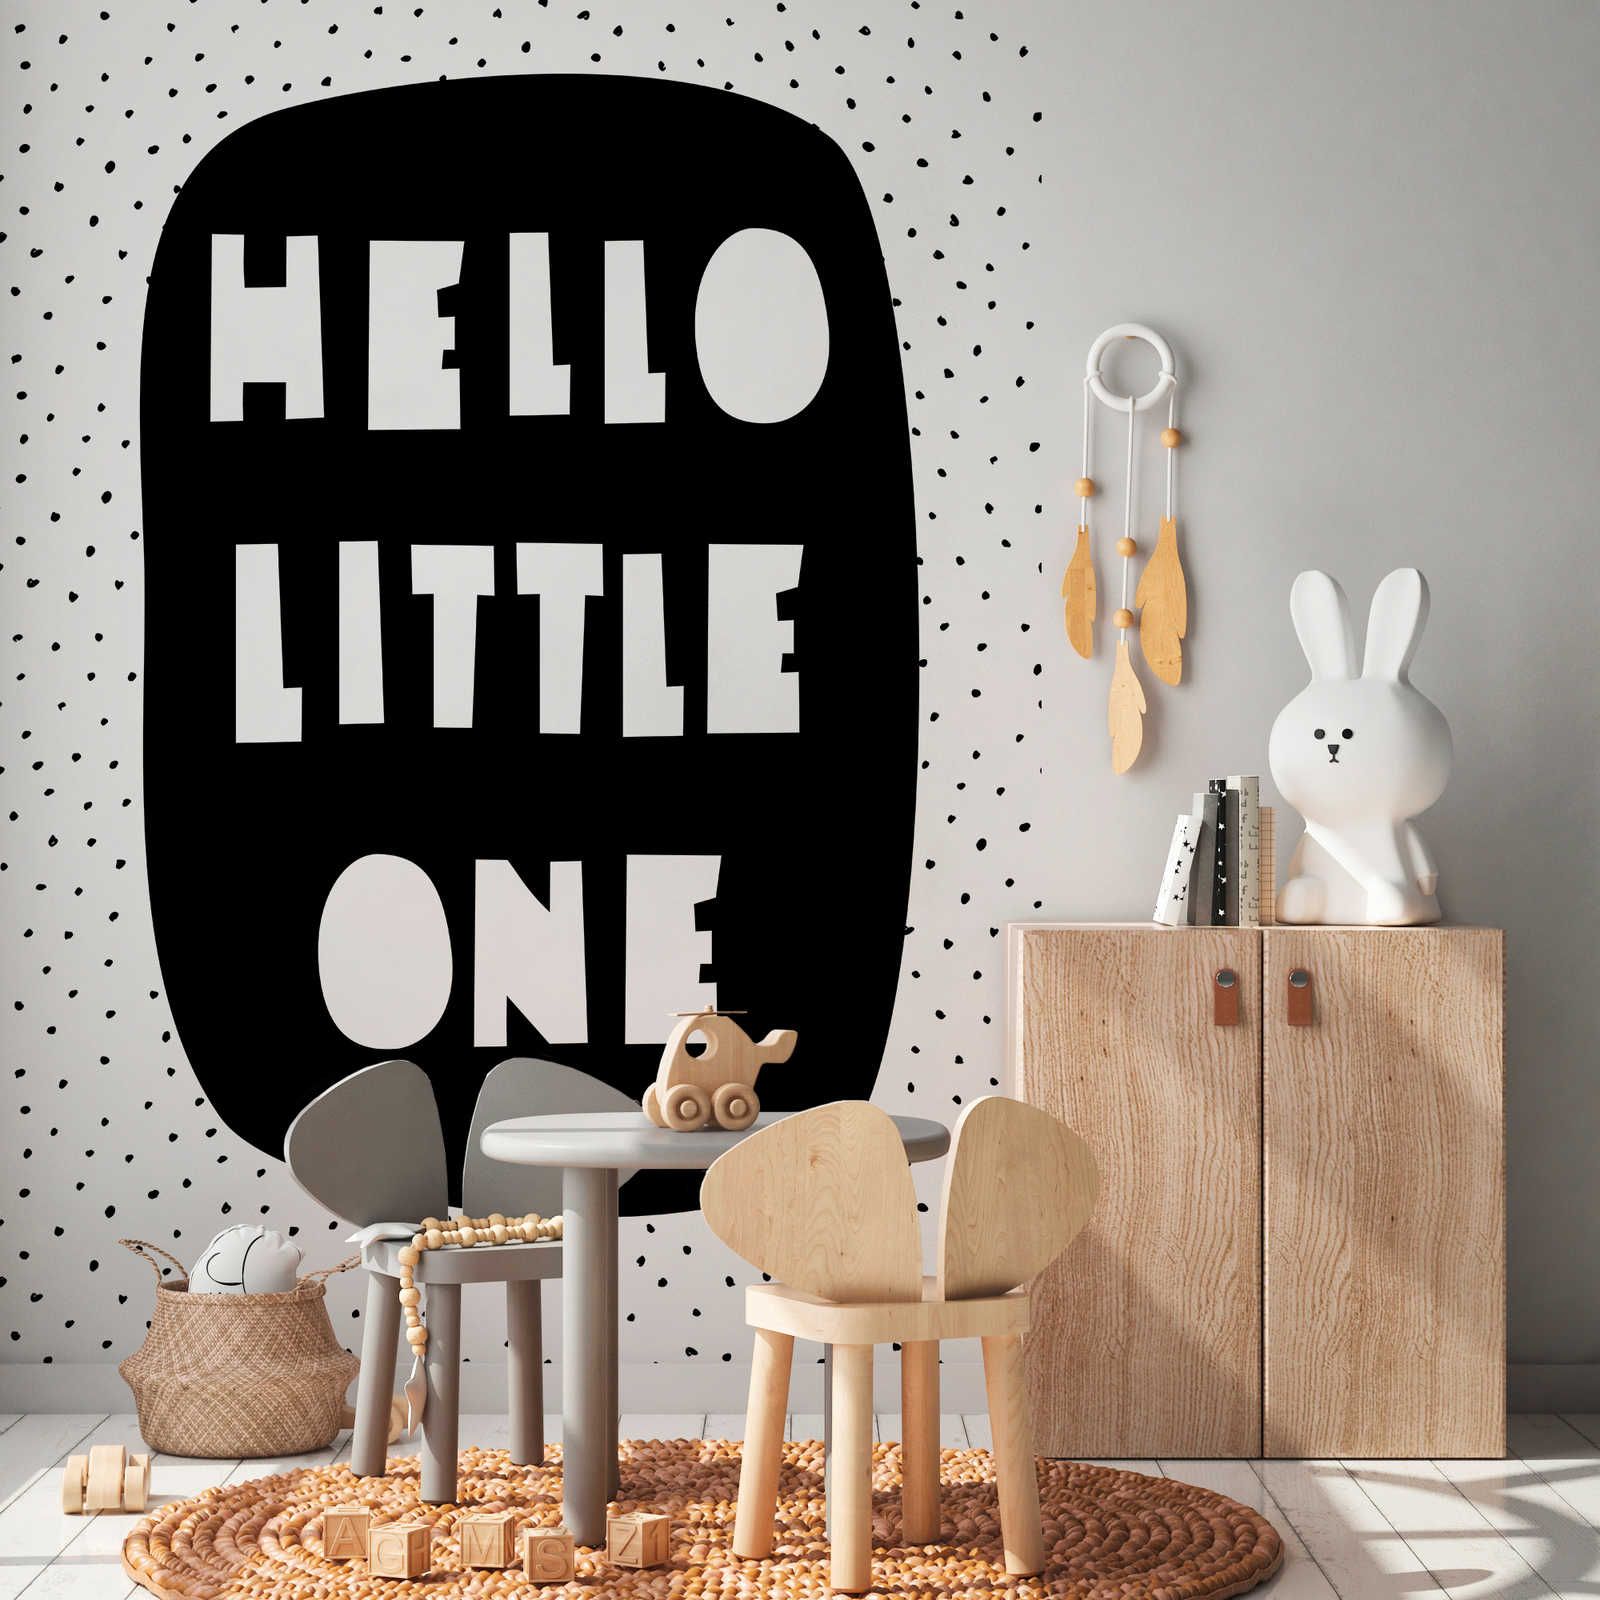 Digital behang voor de kinderkamer met "Hello Little One" opschrift - structuurvlies
